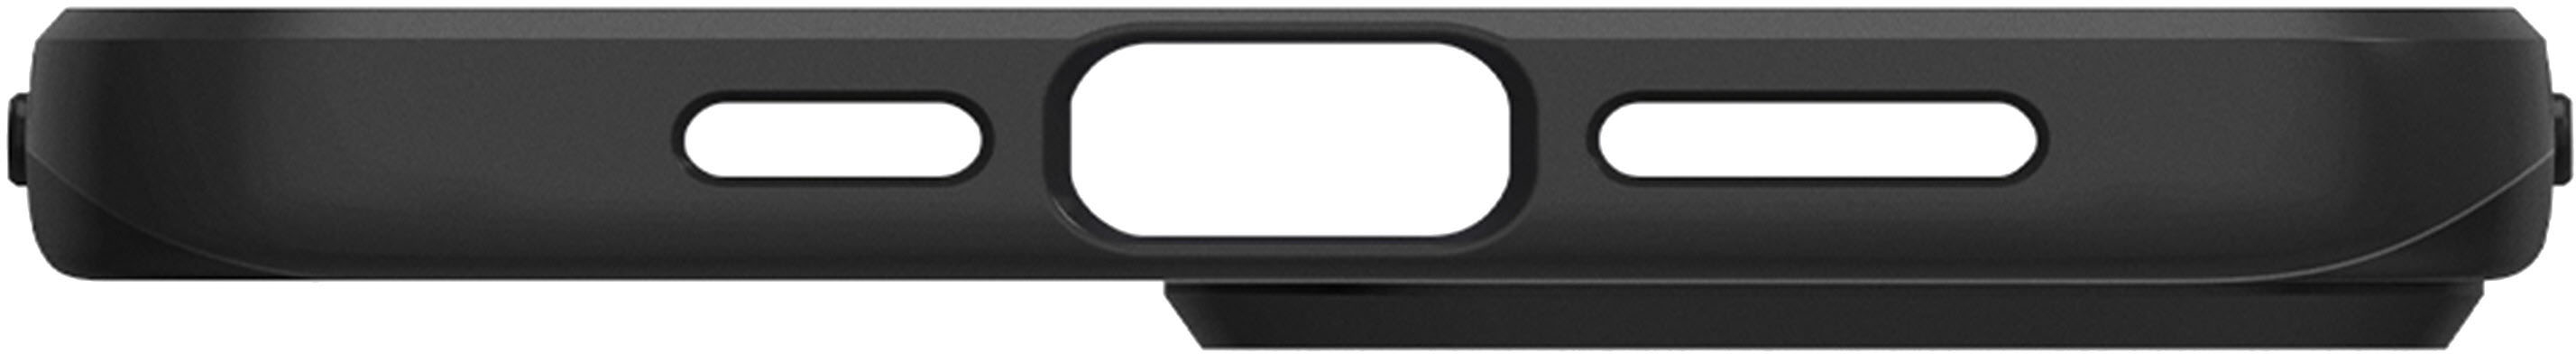 iPhone 12 / 12 Pro Case Thin Fit -  – Spigen Inc